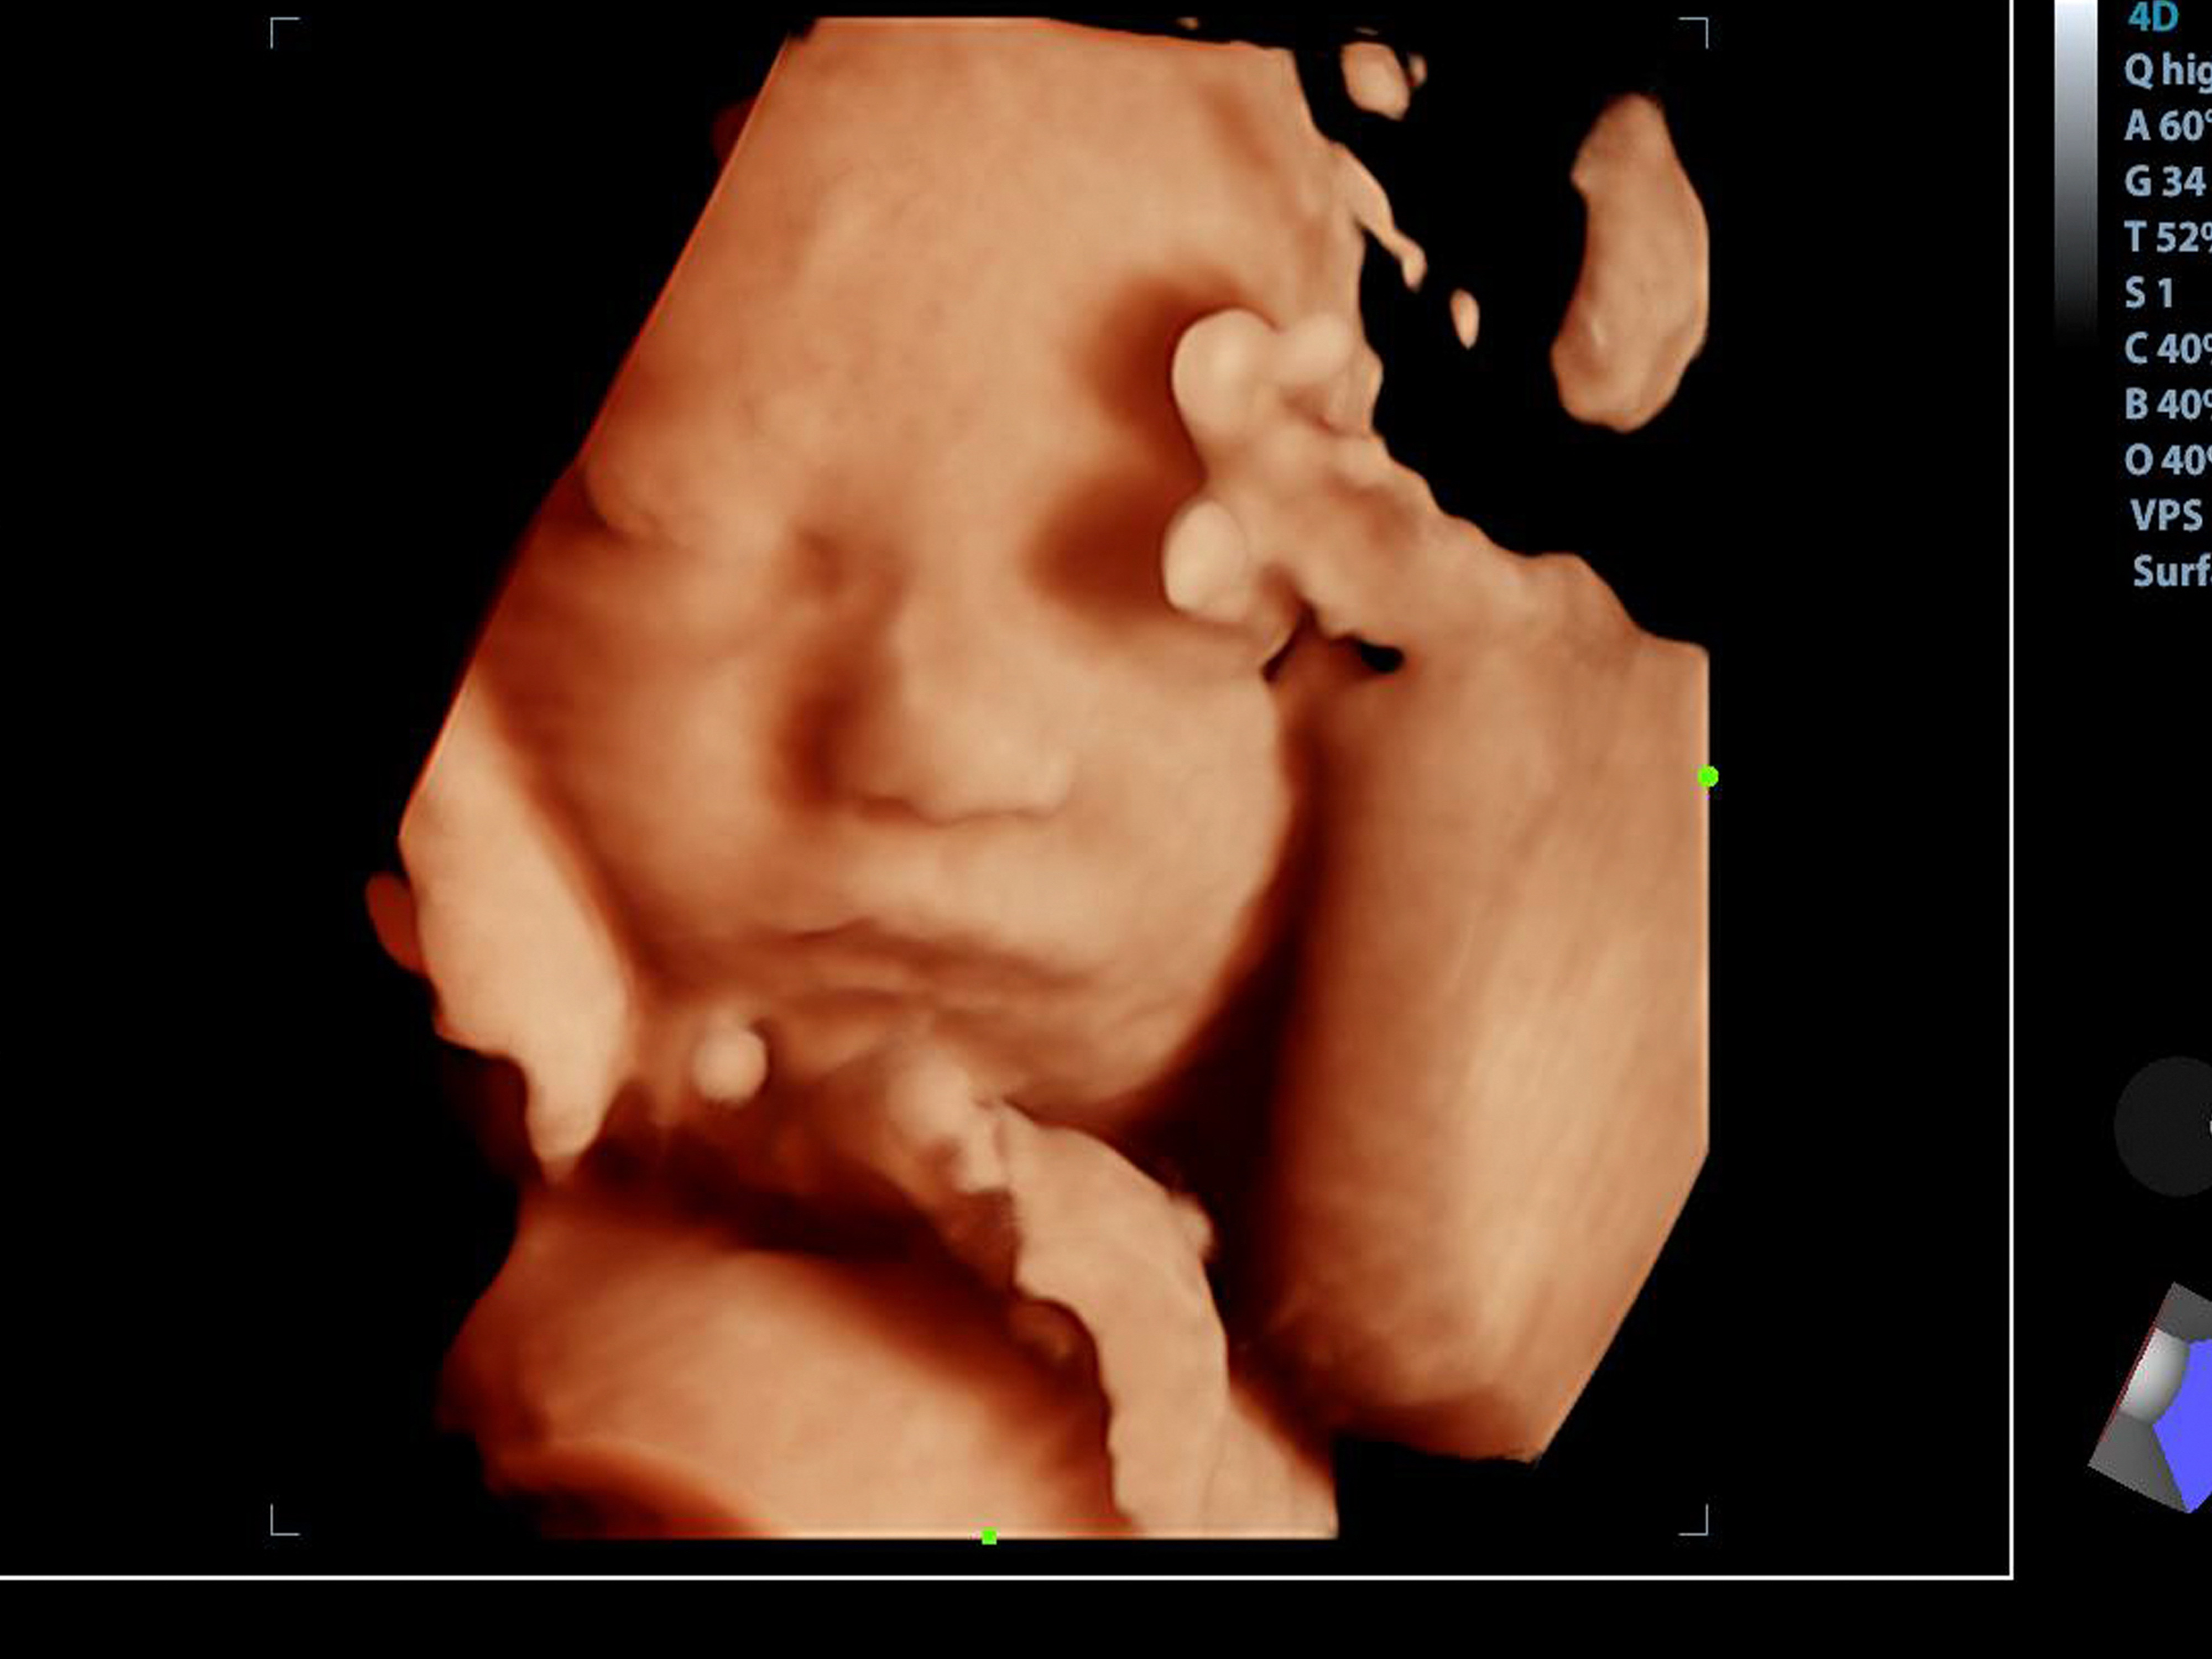 Okozhat-e gondot az ultrahang vizsgálat a babának? - Blikk